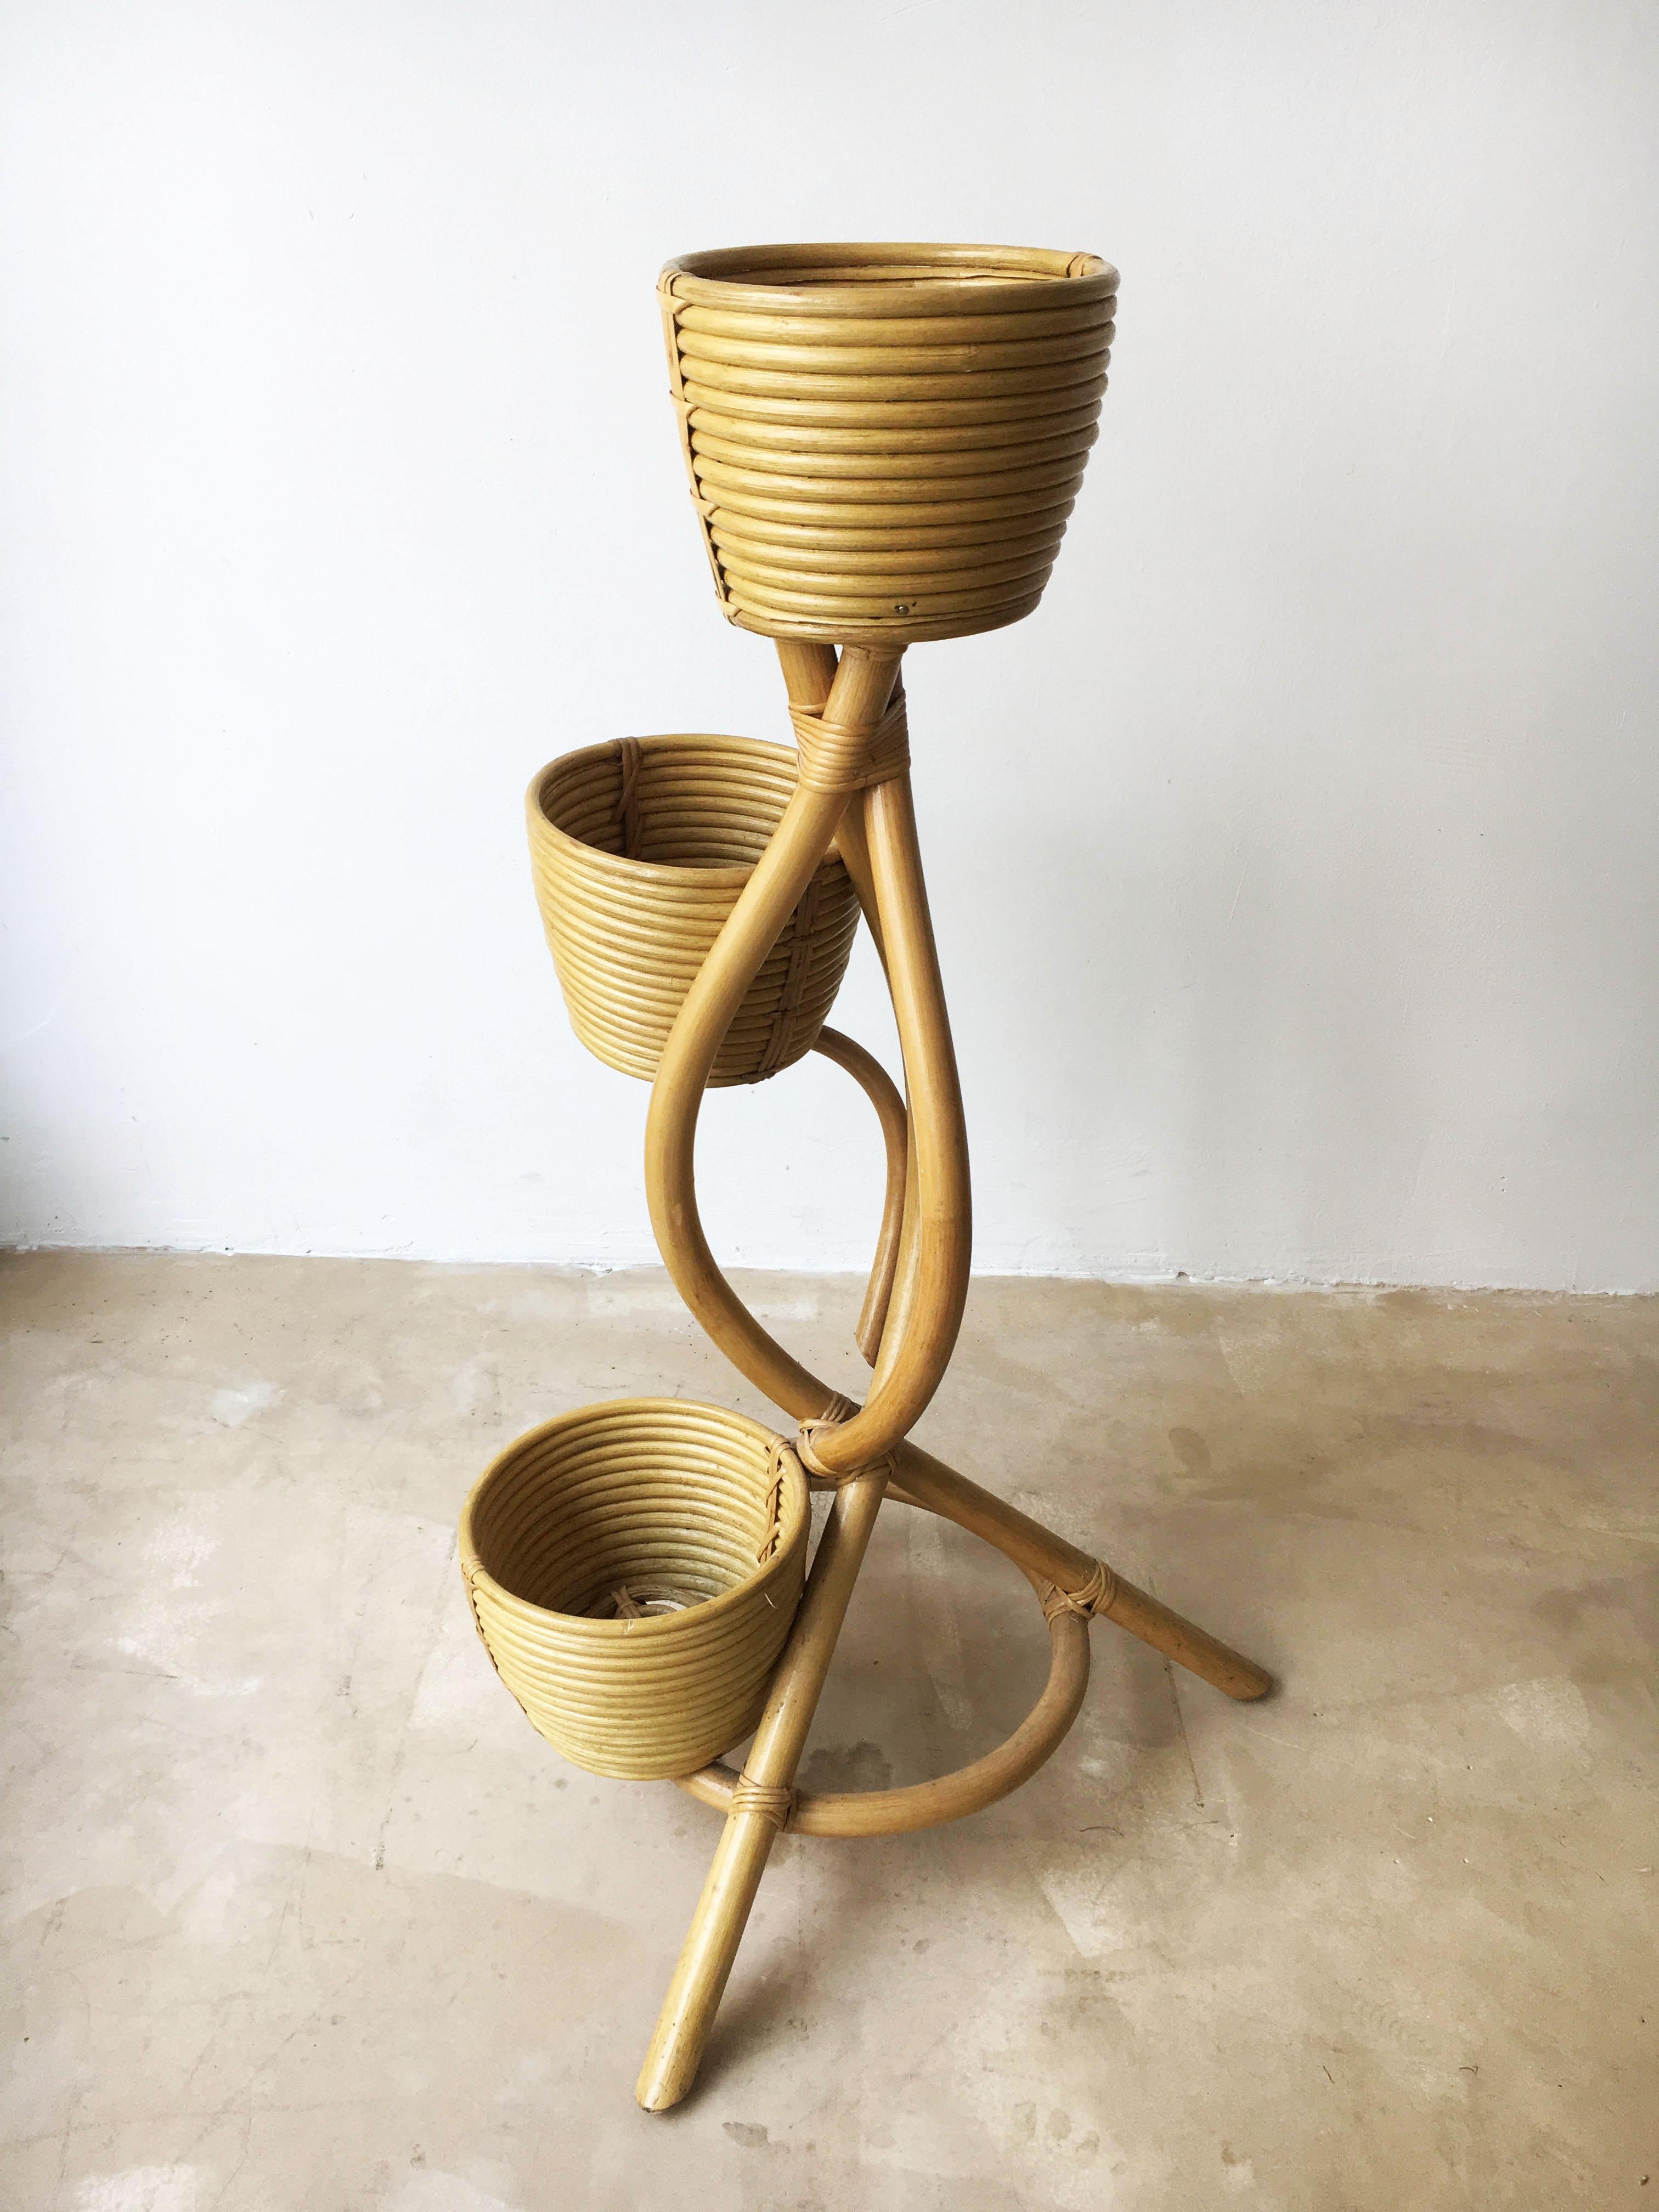 Mid-Century Modern bamboo Italian flower pot stand, Italy, 1970s.